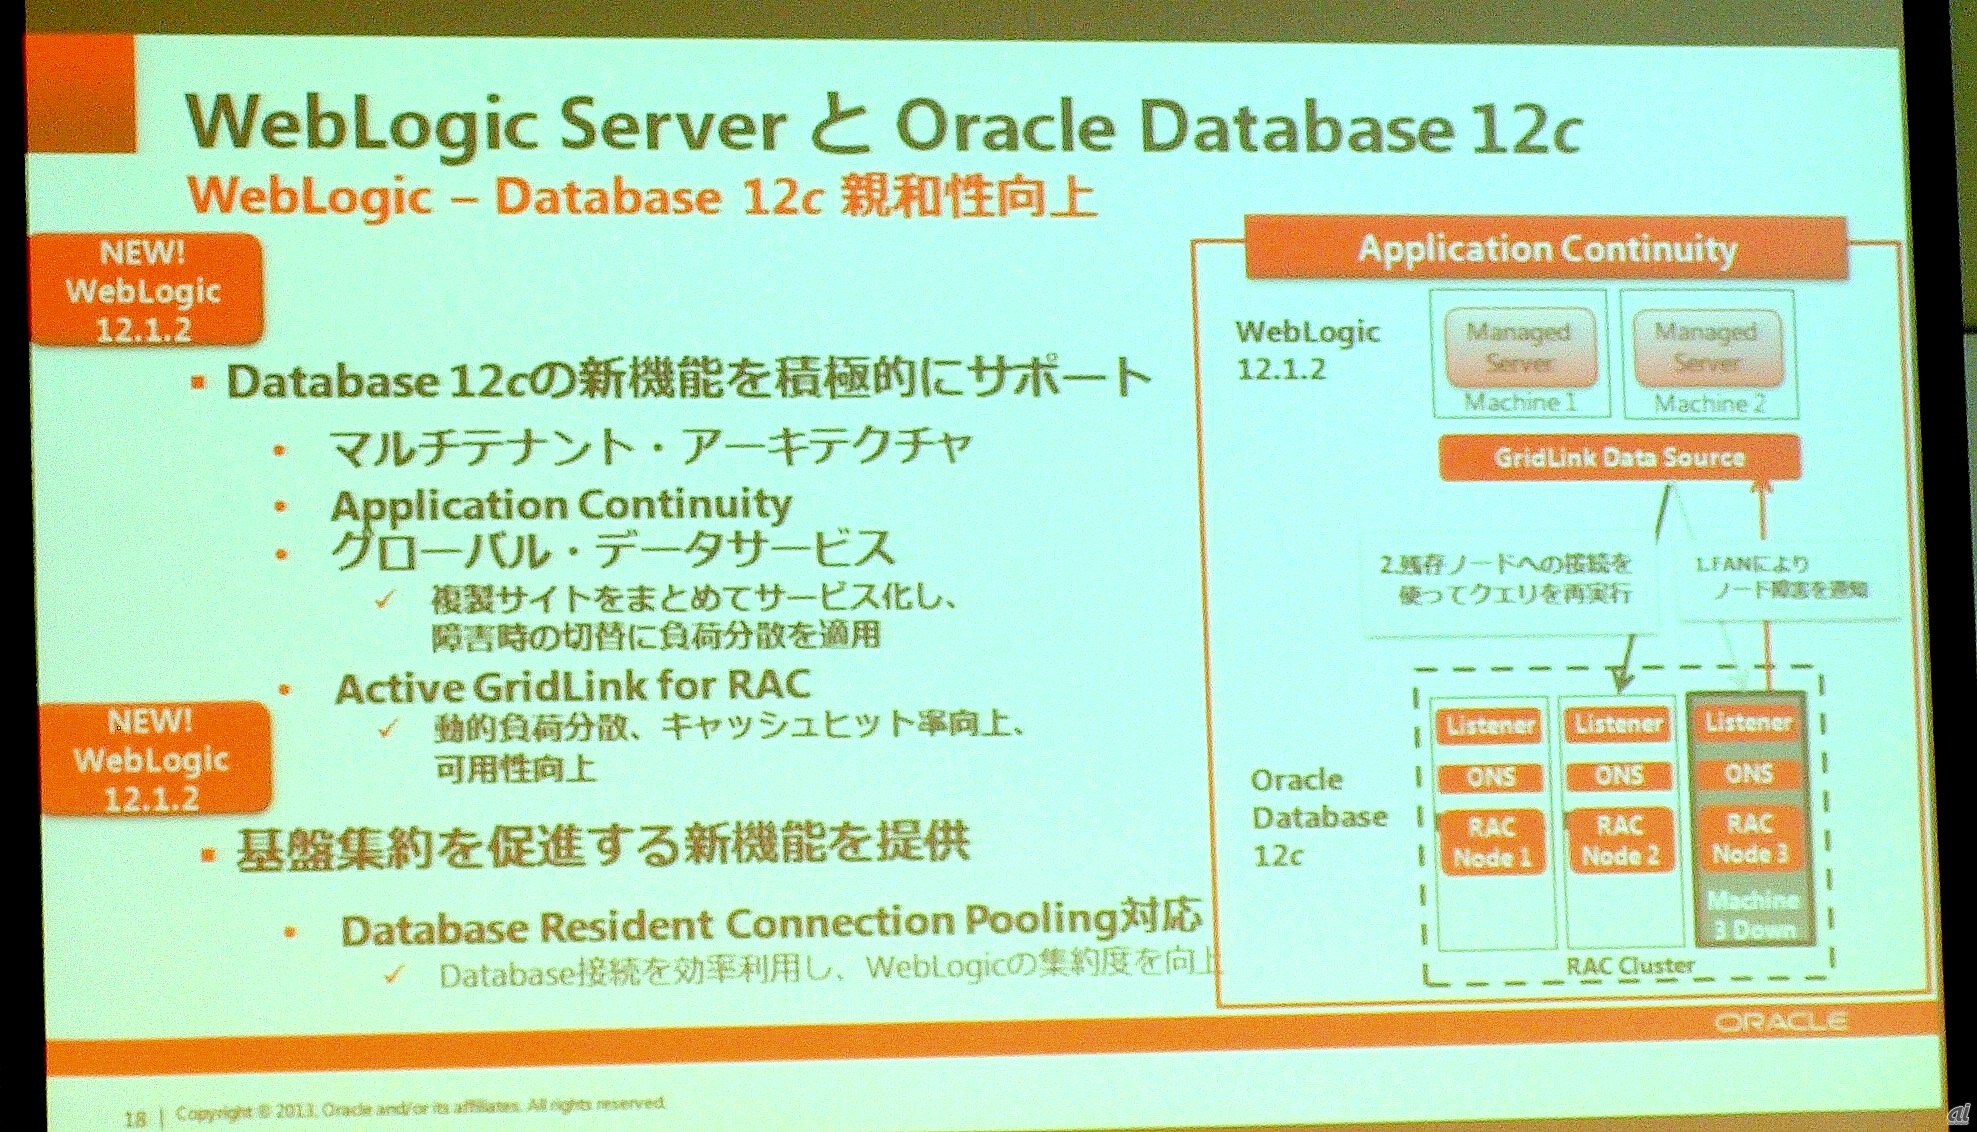 Database 12cとの連携を強化したのがWebLogic Server 12.1.2の特徴だ